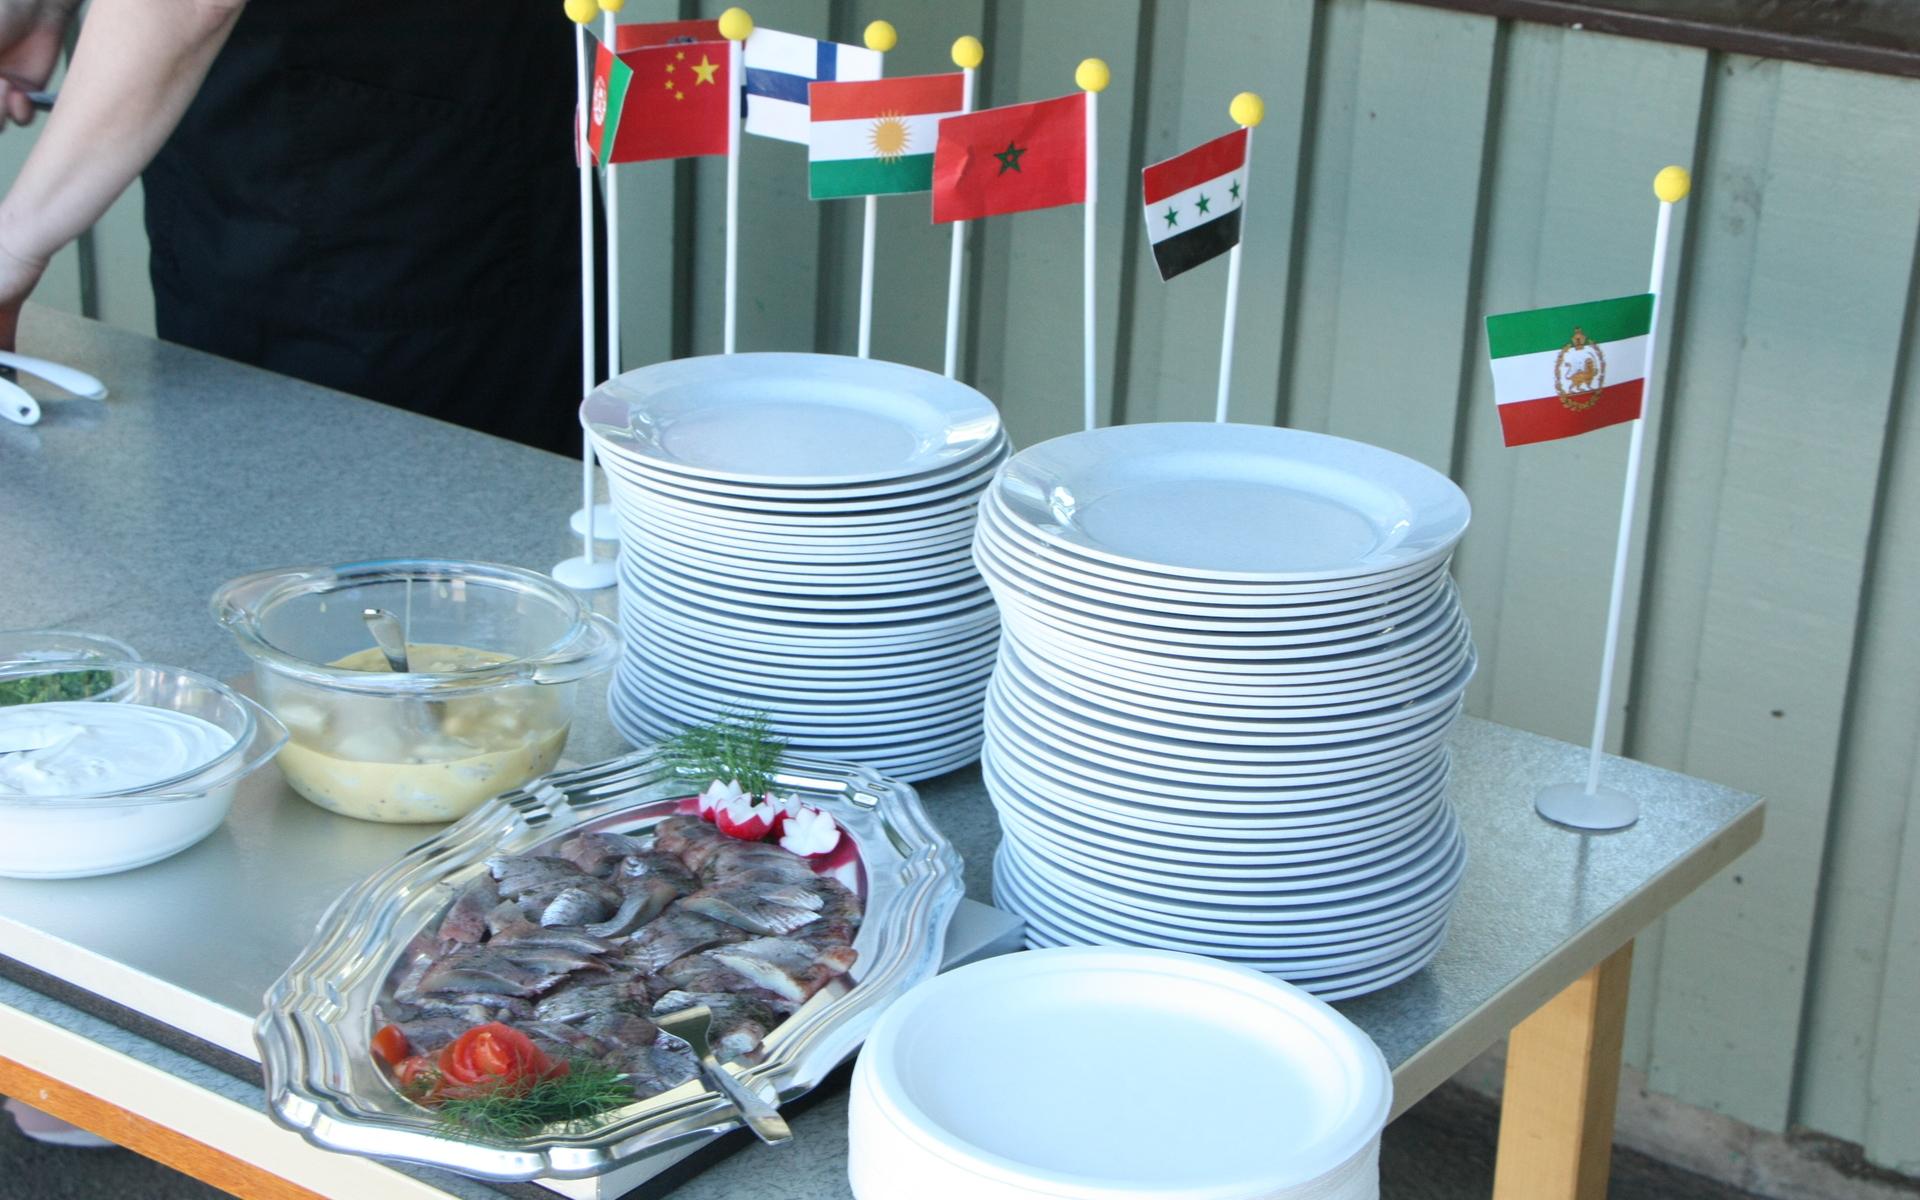 Kökspersonalen hade laddat upp med en svensk paradrätt till lunch - sill och potatis.